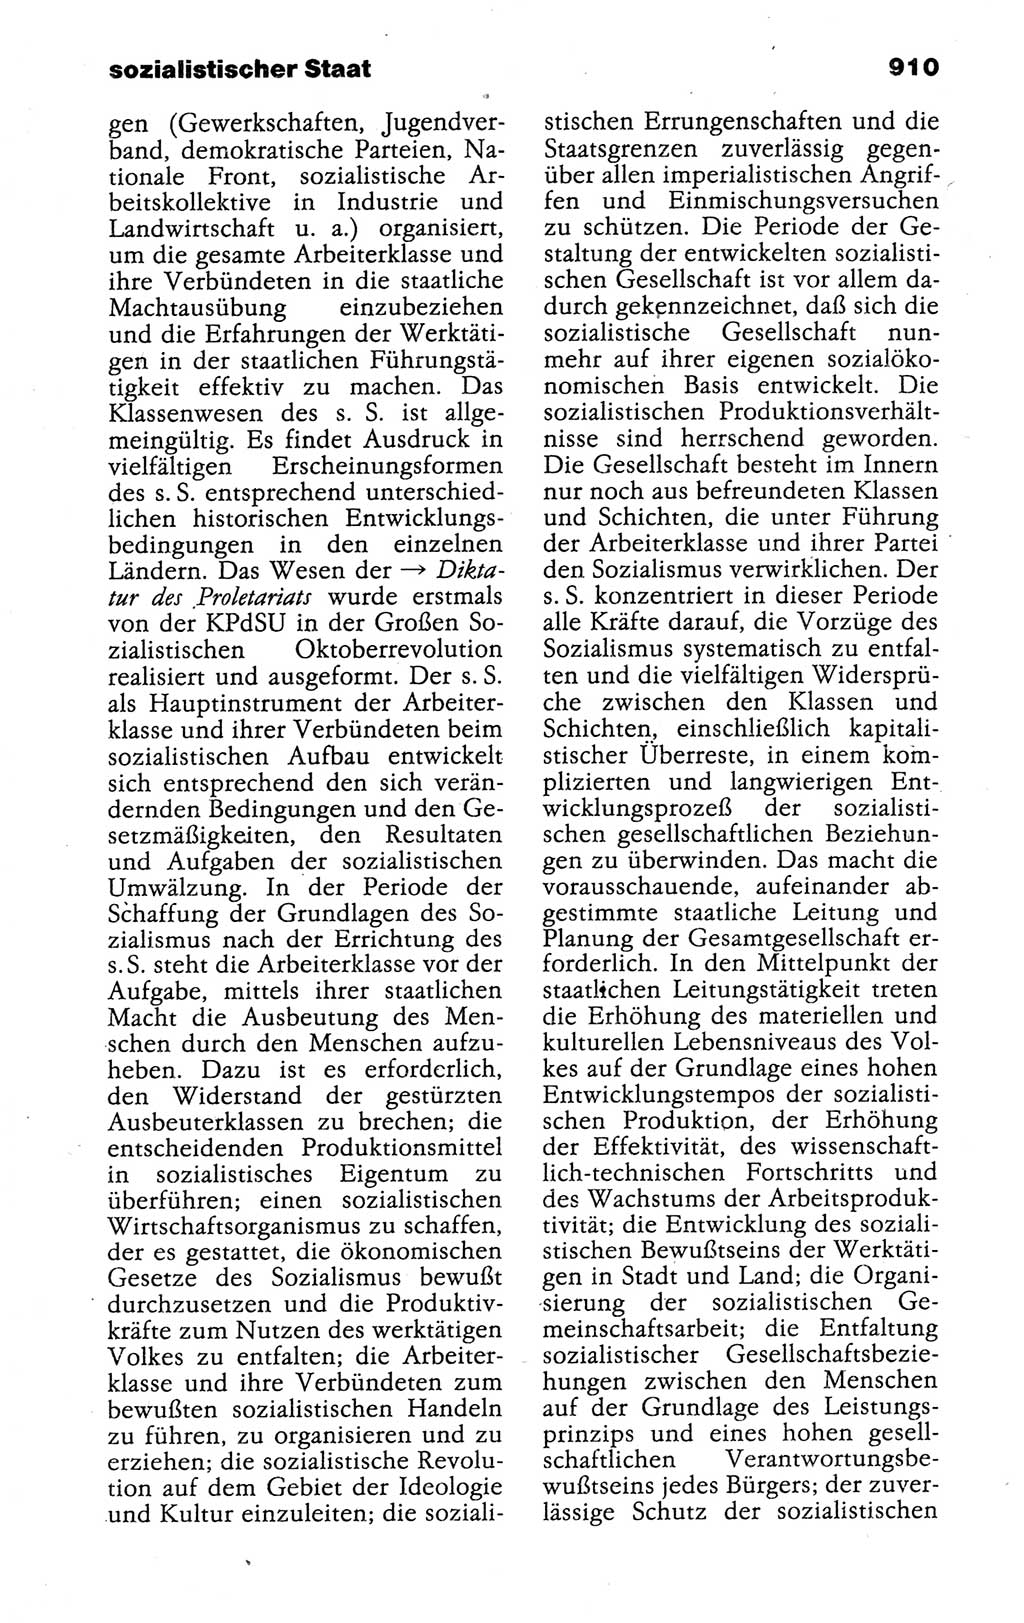 Kleines politisches Wörterbuch [Deutsche Demokratische Republik (DDR)] 1988, Seite 910 (Kl. pol. Wb. DDR 1988, S. 910)